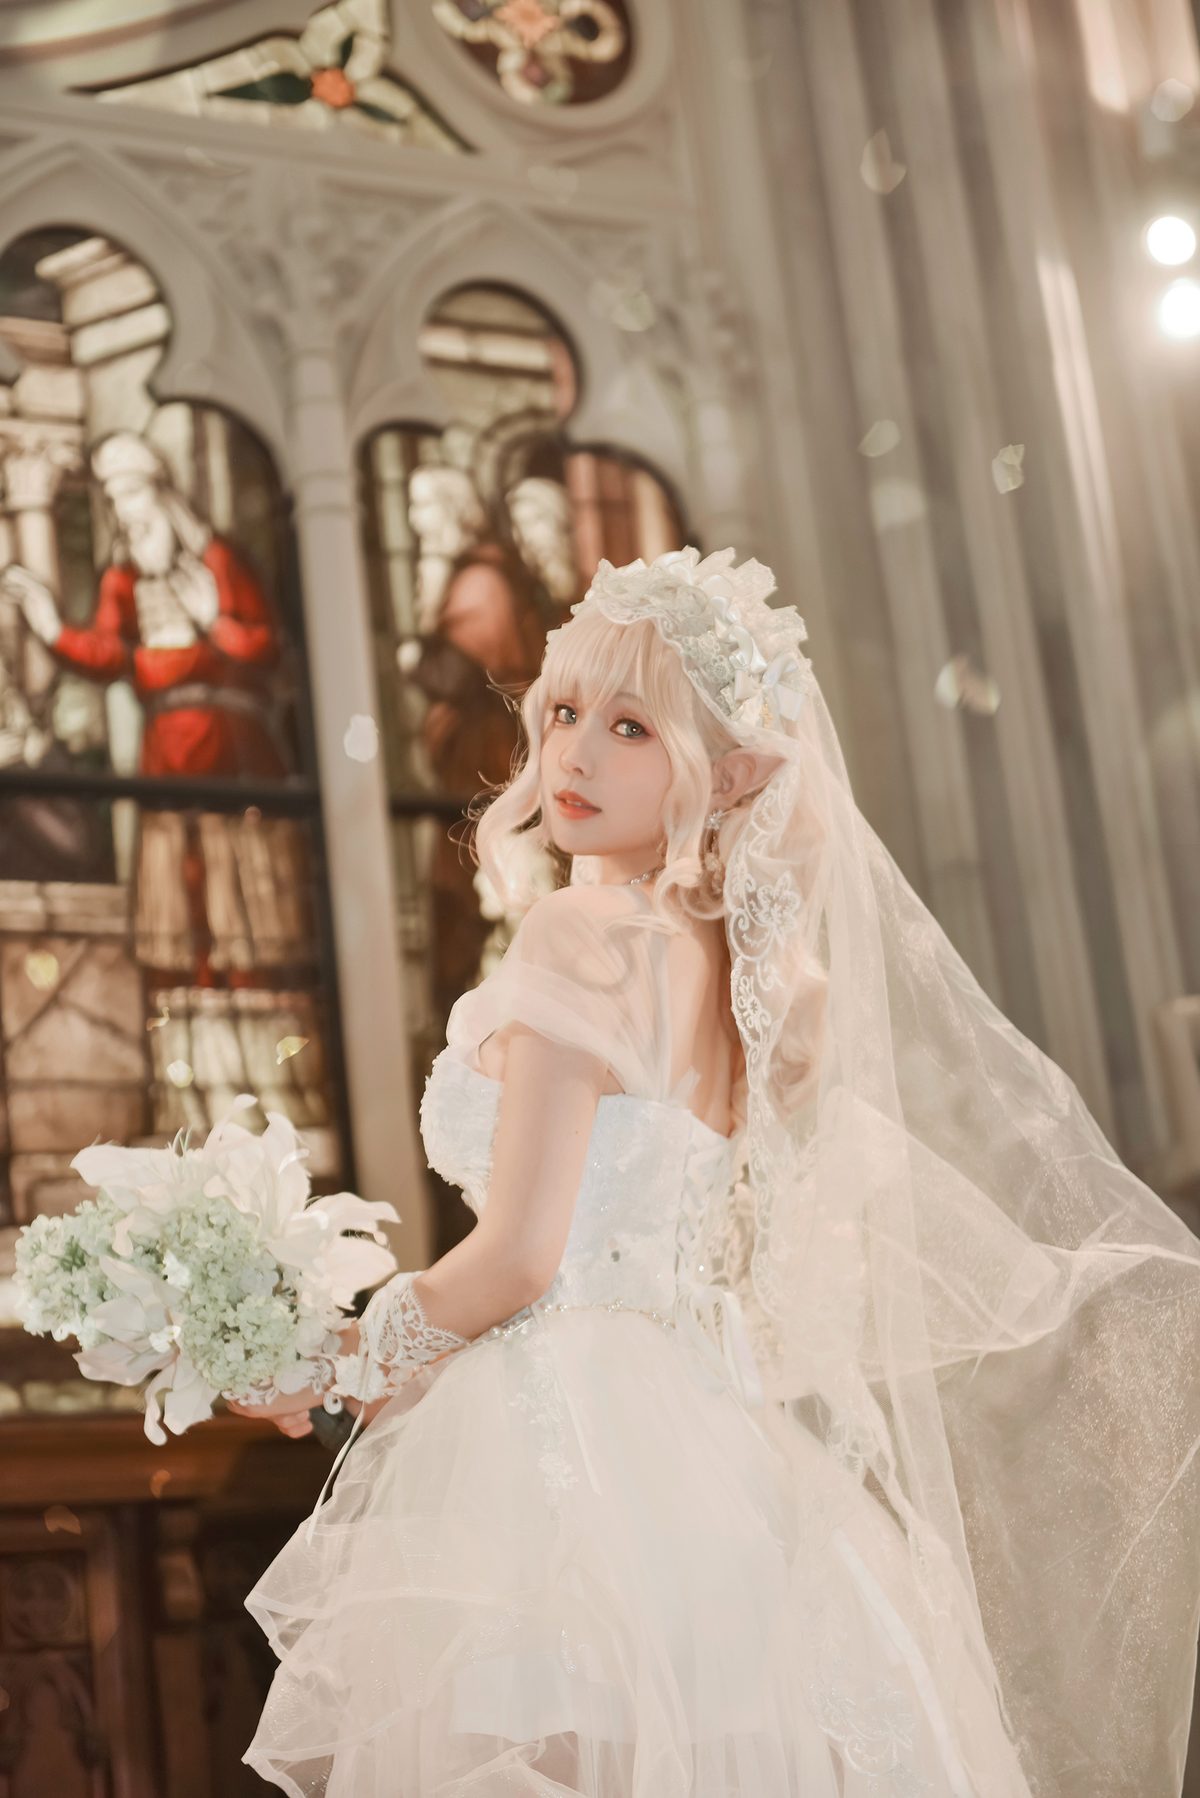 Coser@Ely_eee ElyEE子 Bride And Lingerie 0043 7108995765.jpg